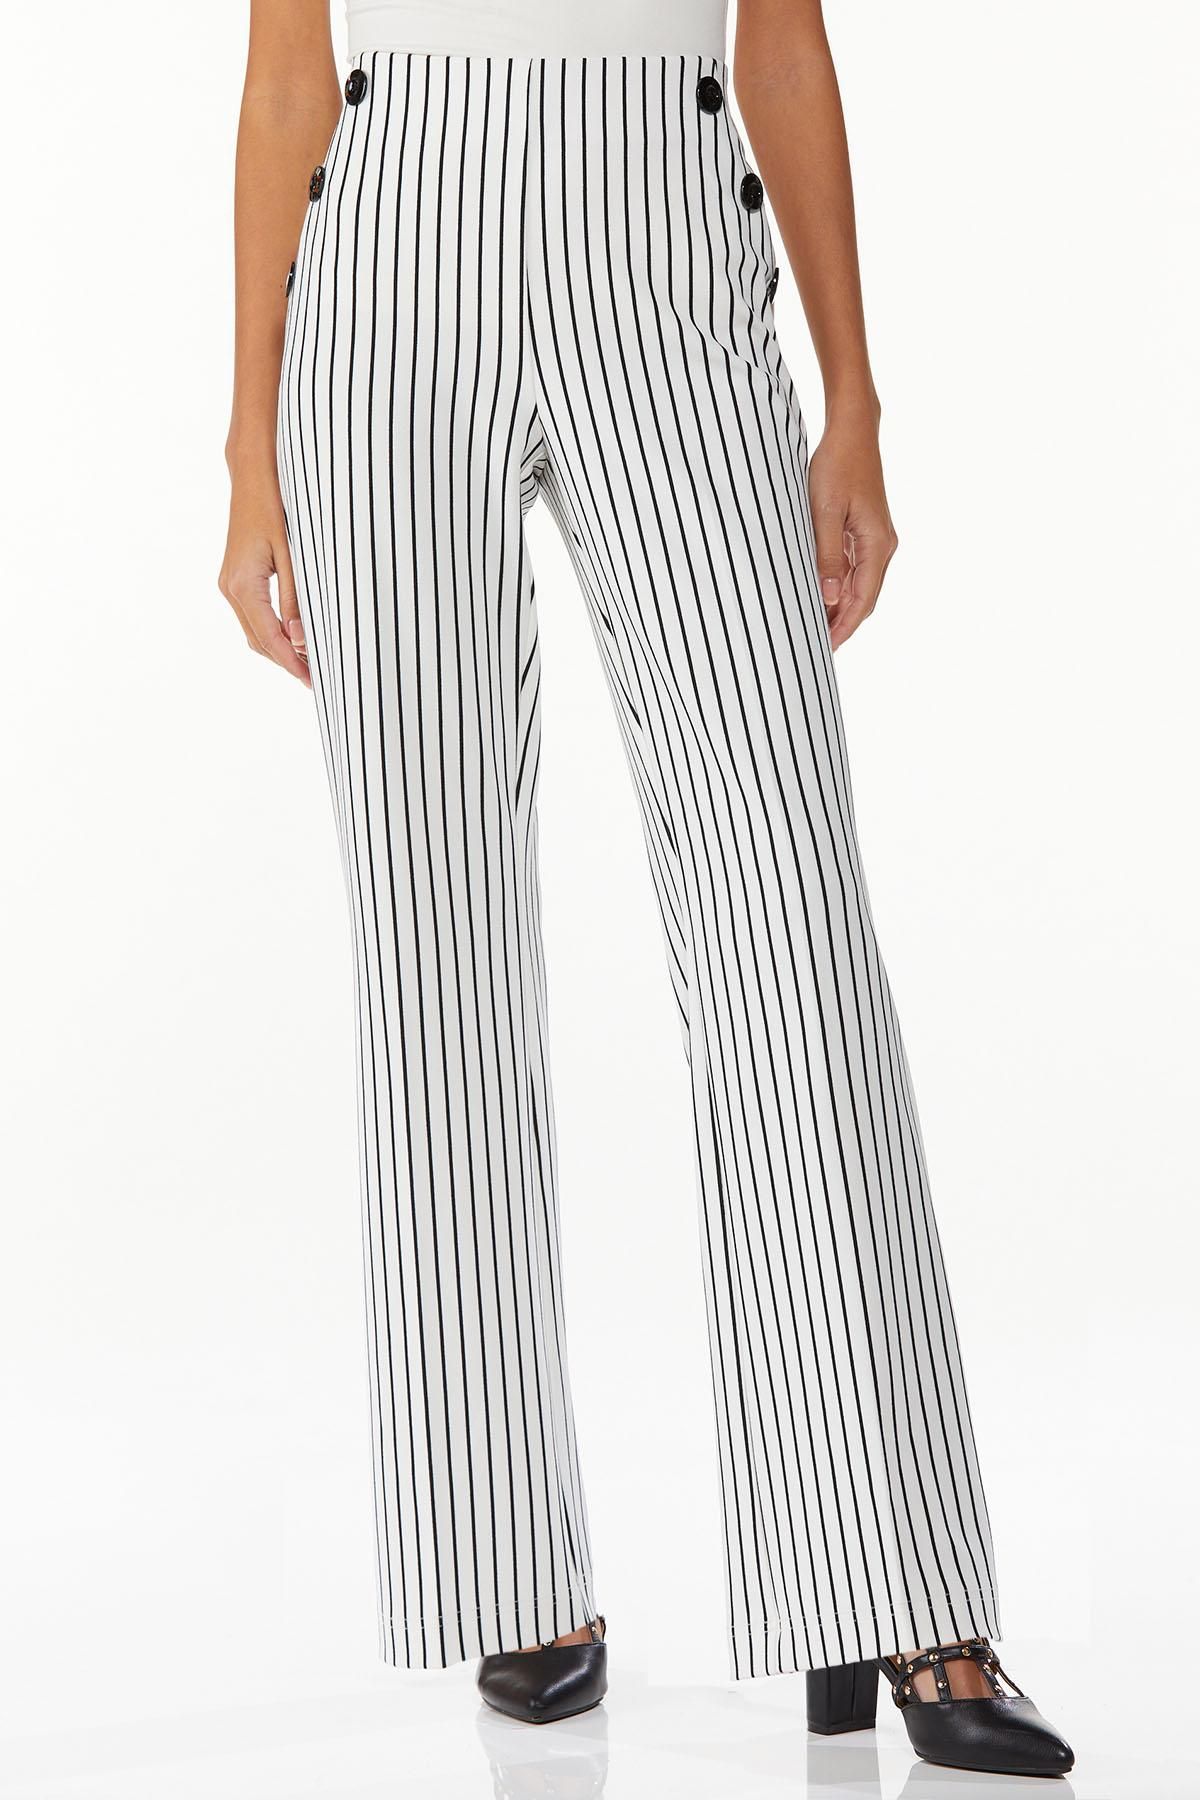 Petite Striped Sailor Trousers | Cato Fashions